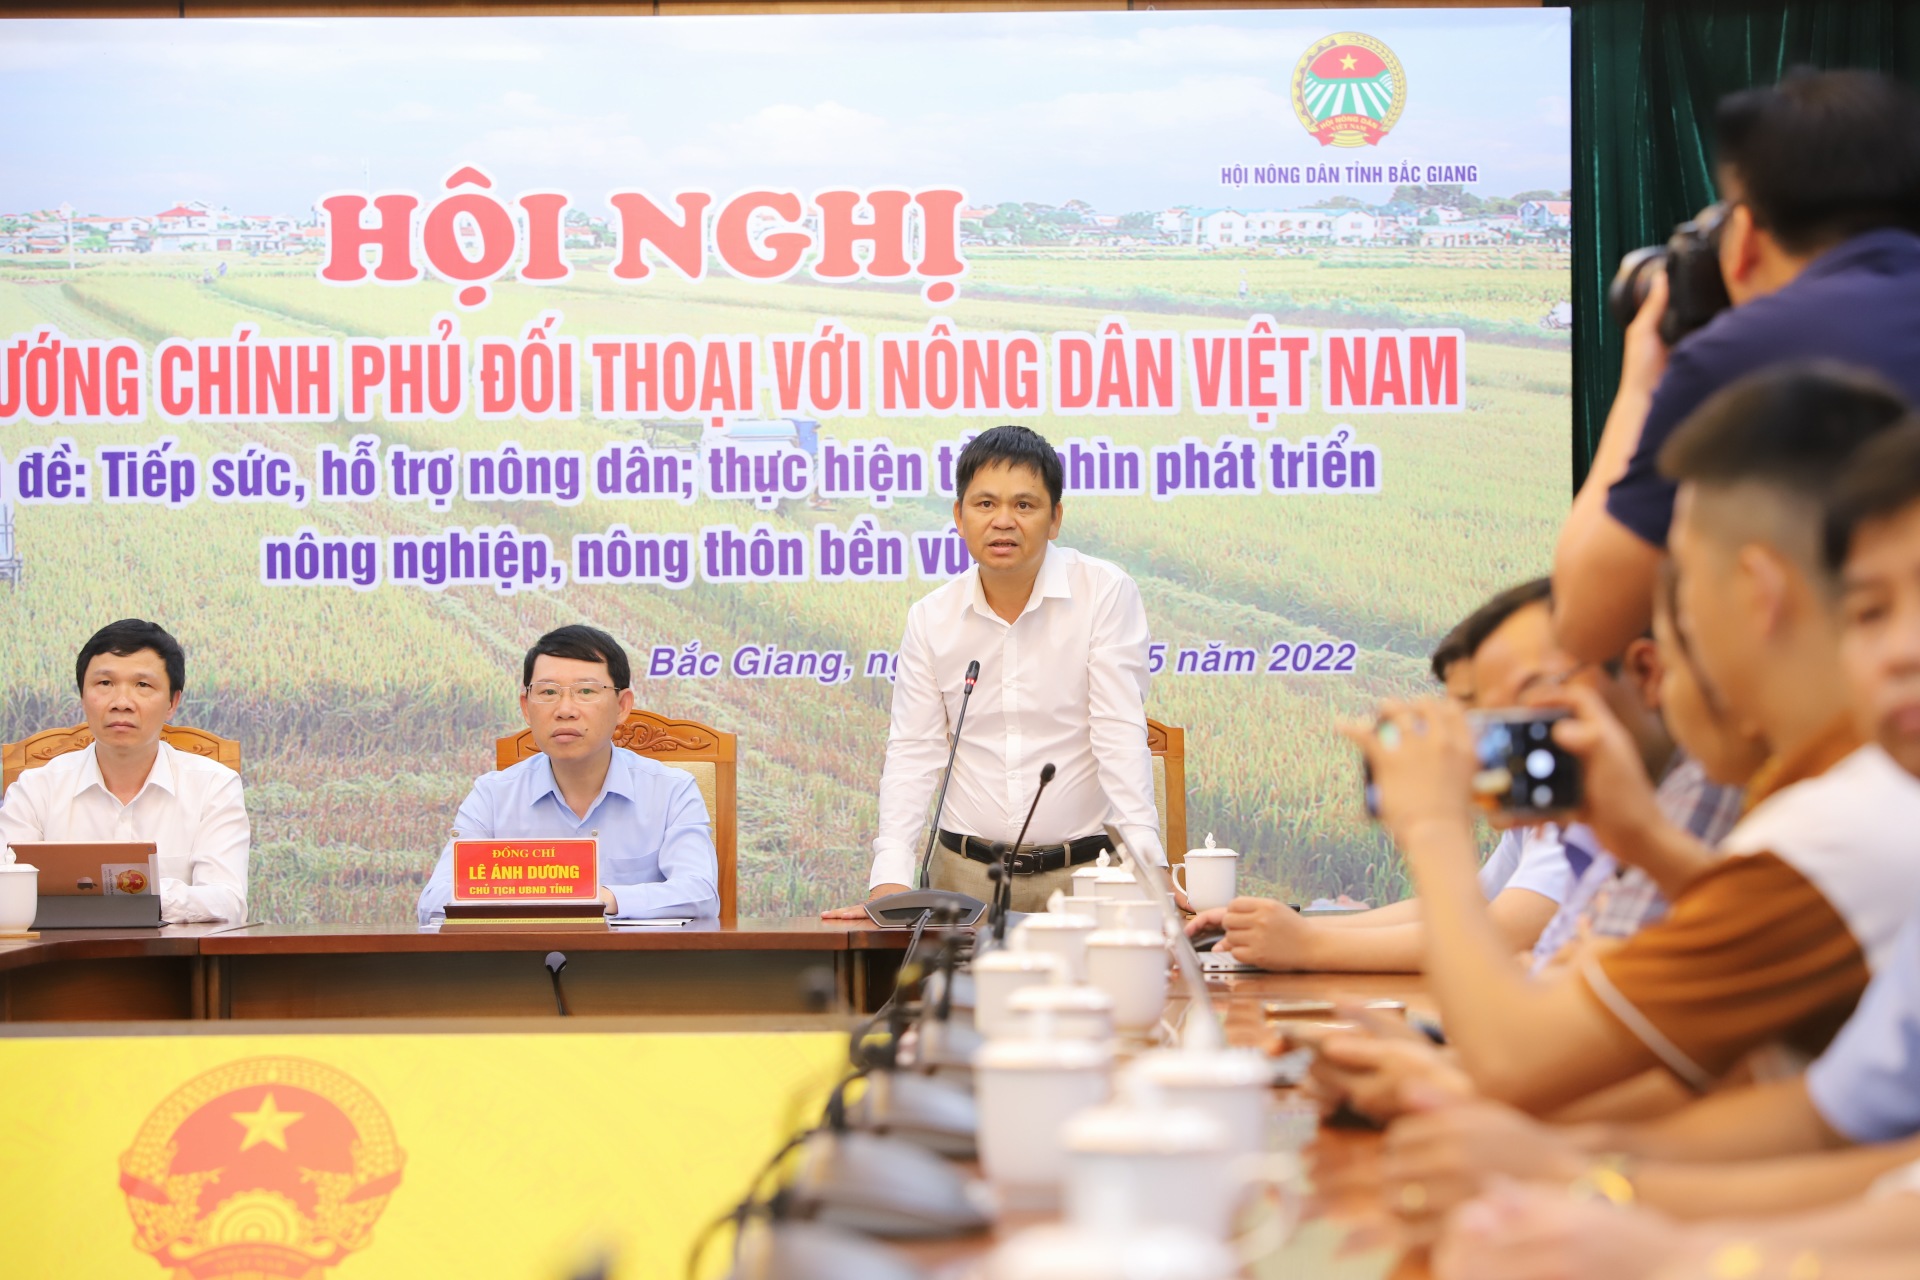 Đang kết nối trực tuyến 62 điểm cầu với Hội nghị Thủ tướng Chính phủ đối thoại với nông dân lần thứ 4 - Ảnh 7.